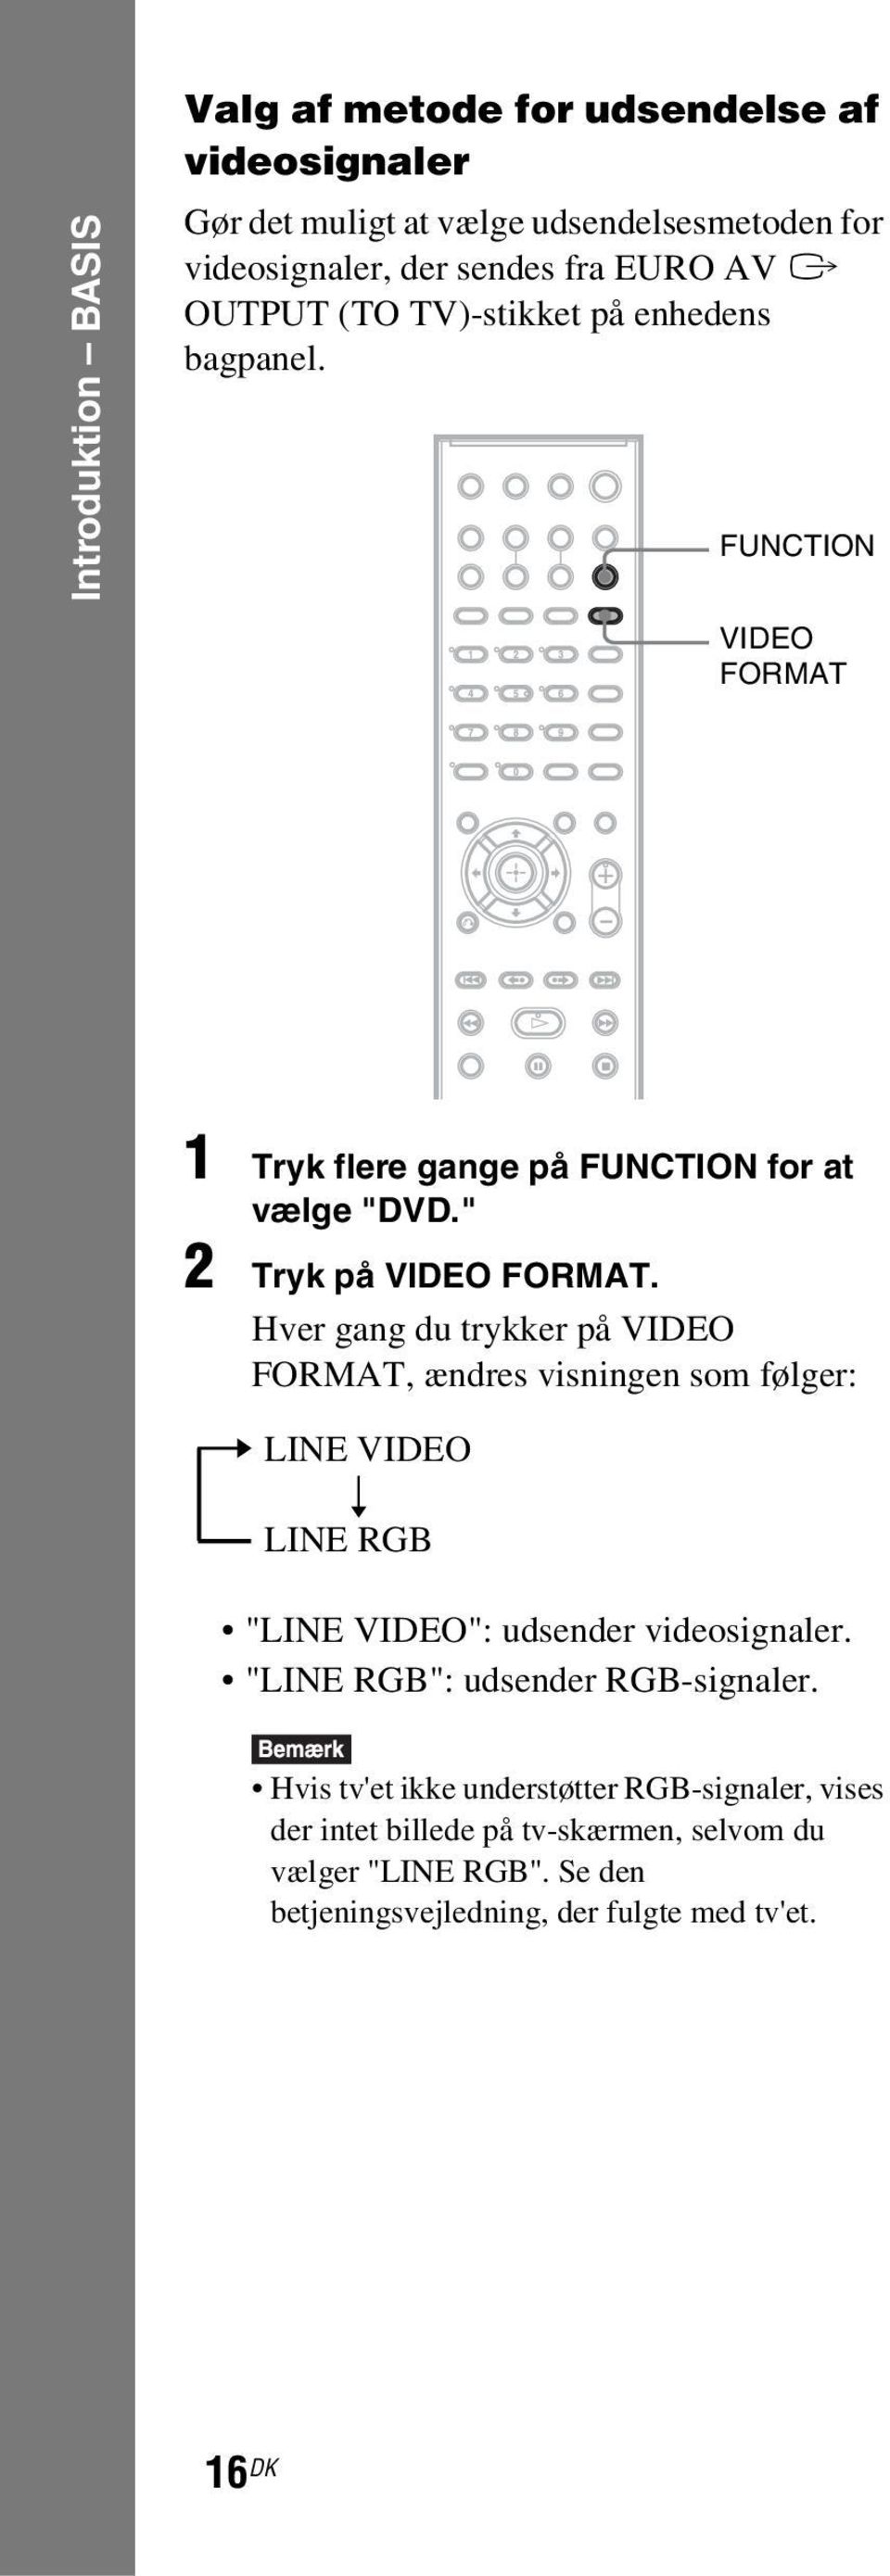 Hver gang du trykker på VIDEO FORMAT, ændres visningen som følger: t LINE VIDEO r LINE RGB "LINE VIDEO": udsender videosignaler.